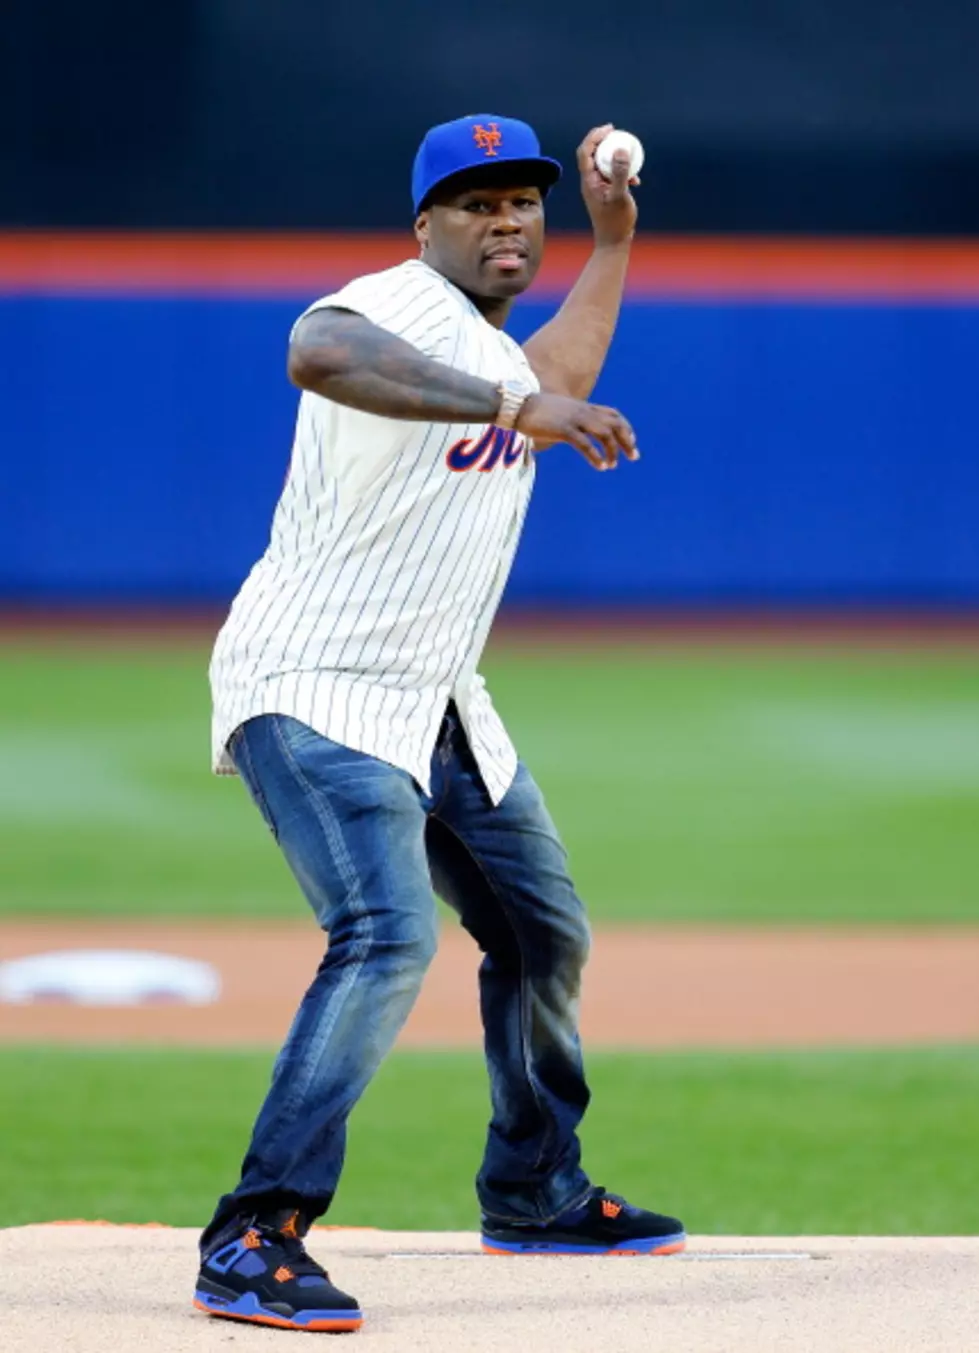 50 Cent; A Rapper Not A Pitcher [Video]